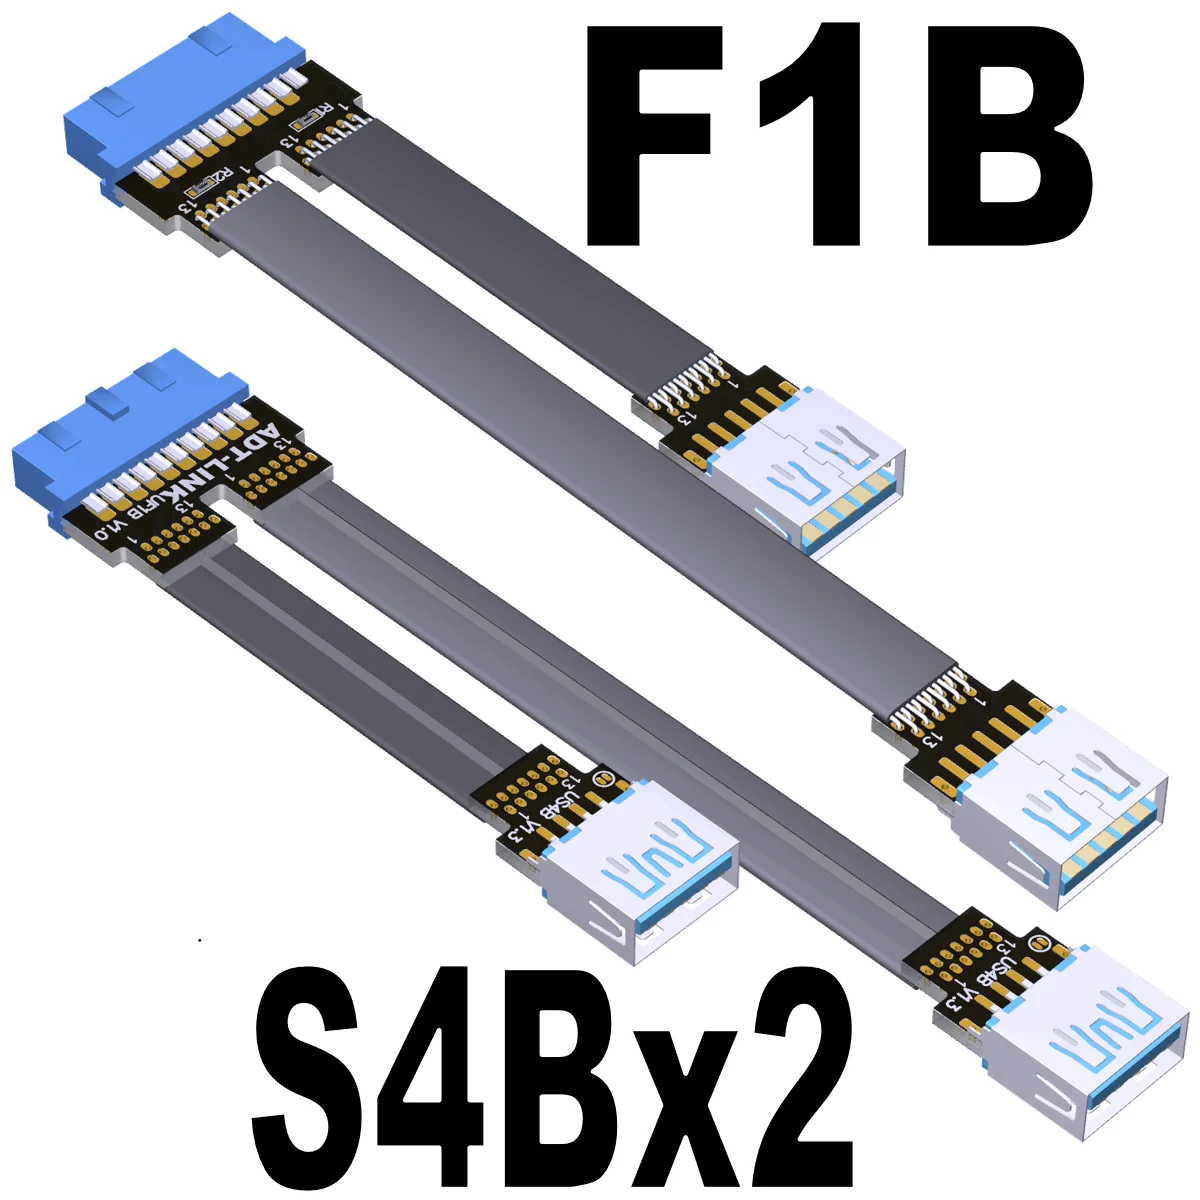 Сгънете на 90 градуса Двоен Конектор USB 3.0 Type-A На Вътрешния 19Pin /20Pin Син Плоскому Удлинительному Кабел с Отвор за винт 5 Gbit/s